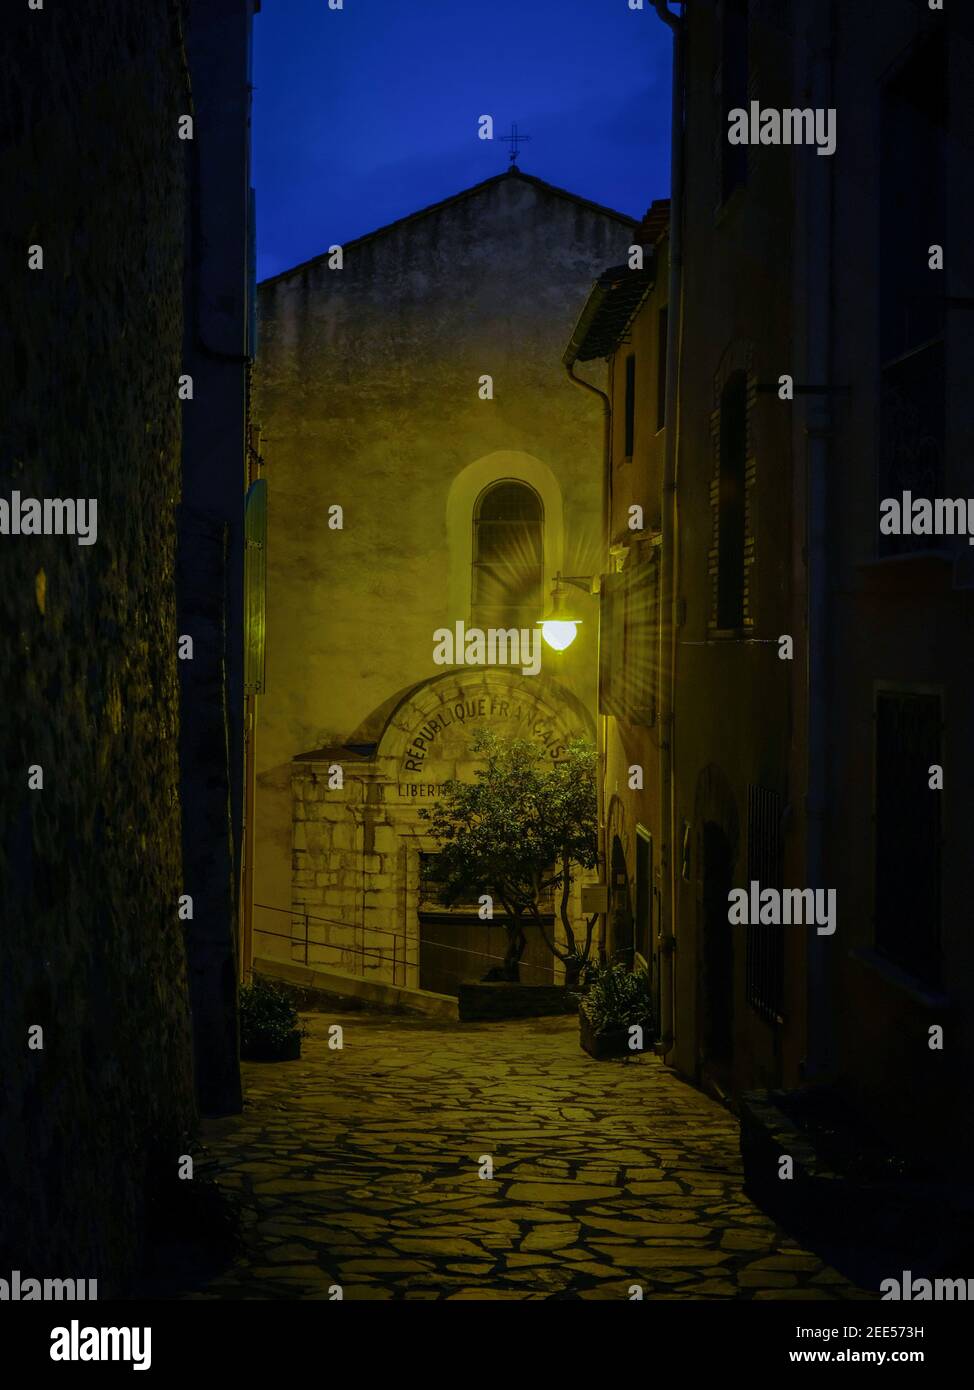 Facciata della chiesa in serata con un unico apparecchio luminoso esterno che diffonde una luce gialla. Preso a Collioure, Francia nel mese di dicembre. Foto Stock